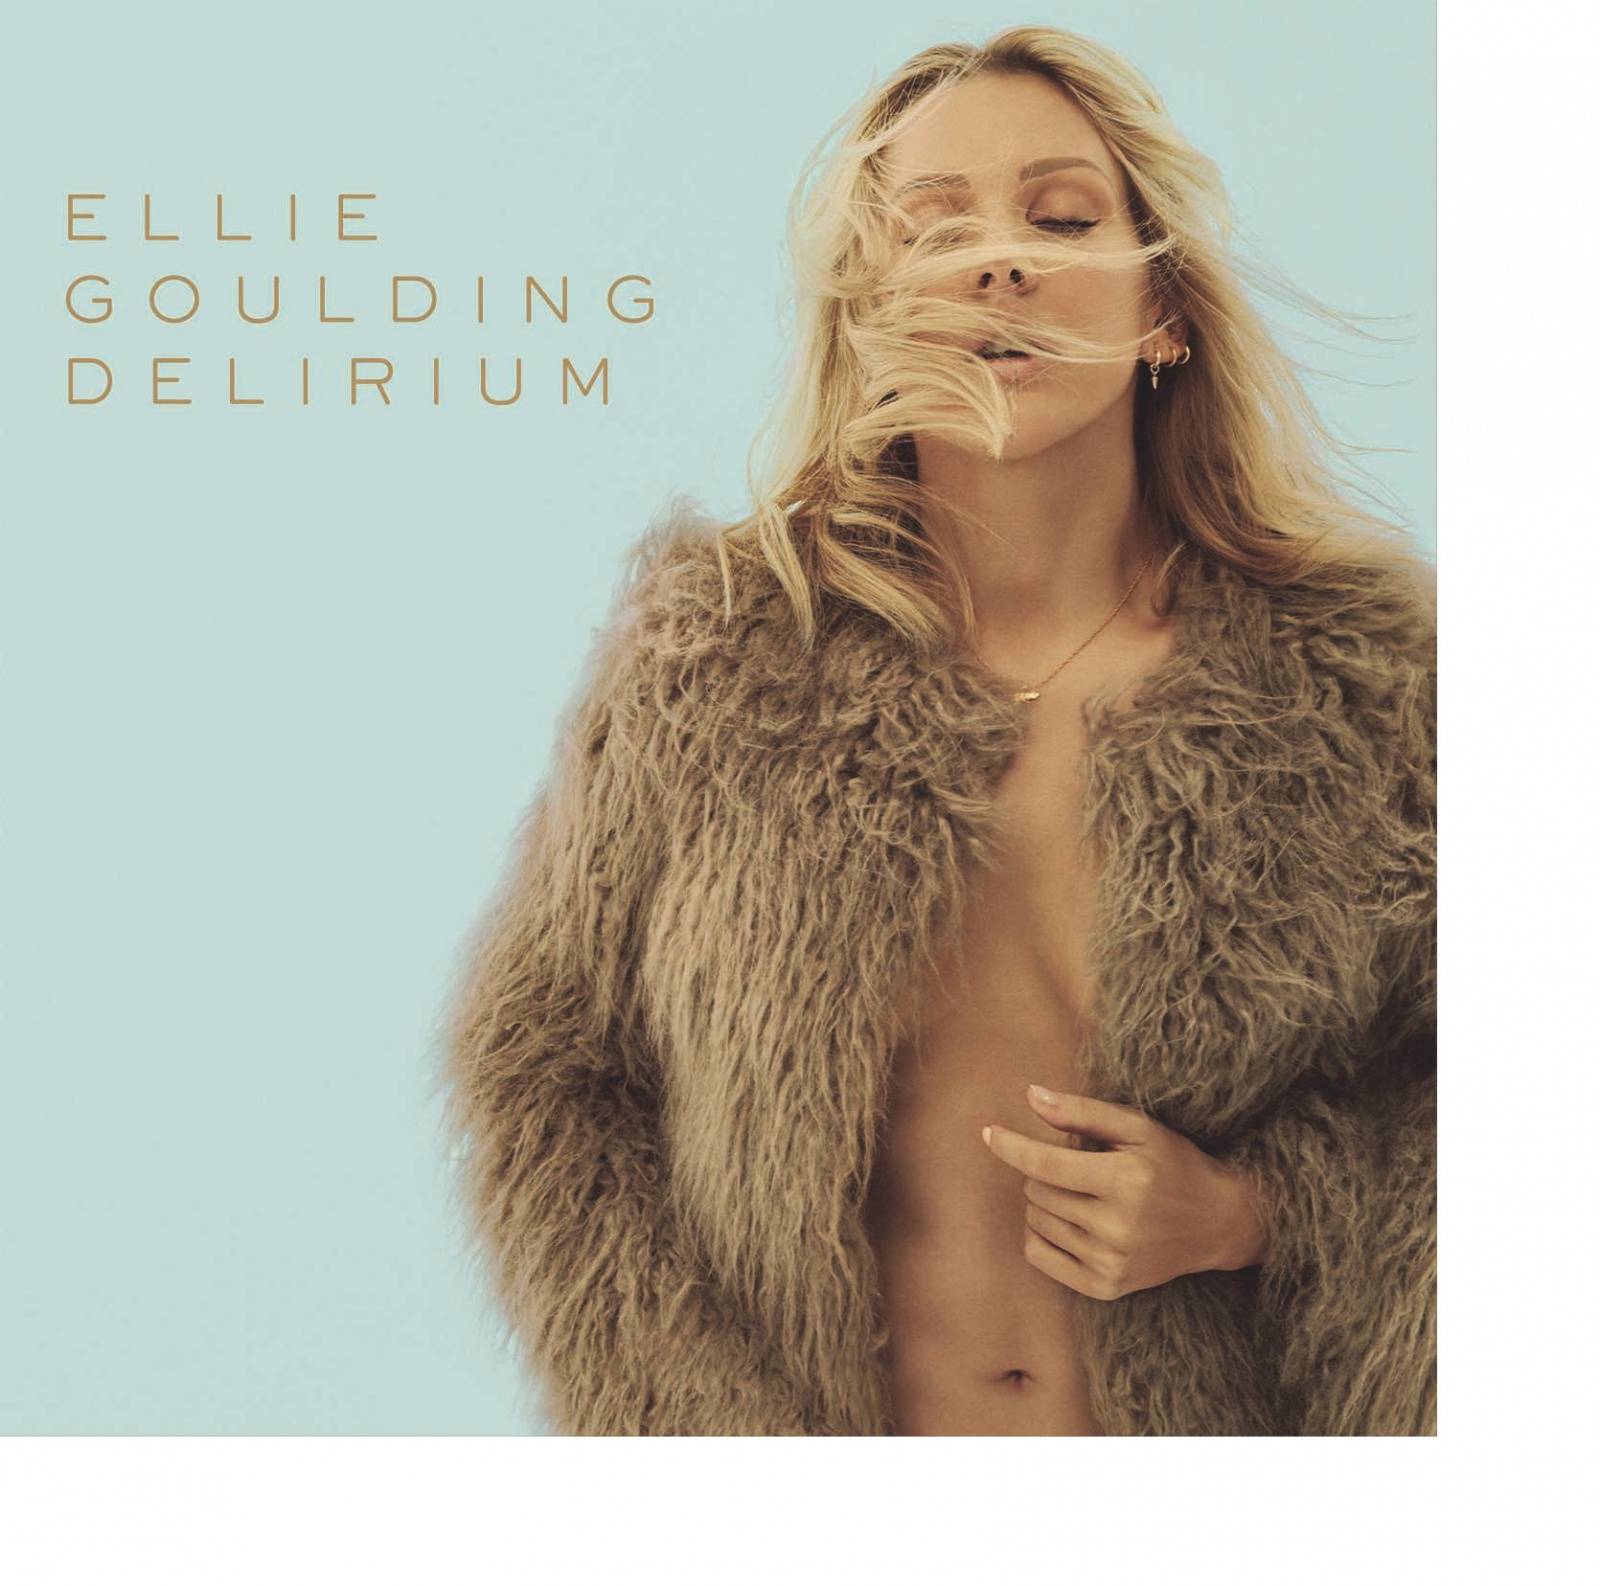 RECENZE: Nová Ellie Goulding už z řady nevyčnívá, přesto je Delirium dobrá deska